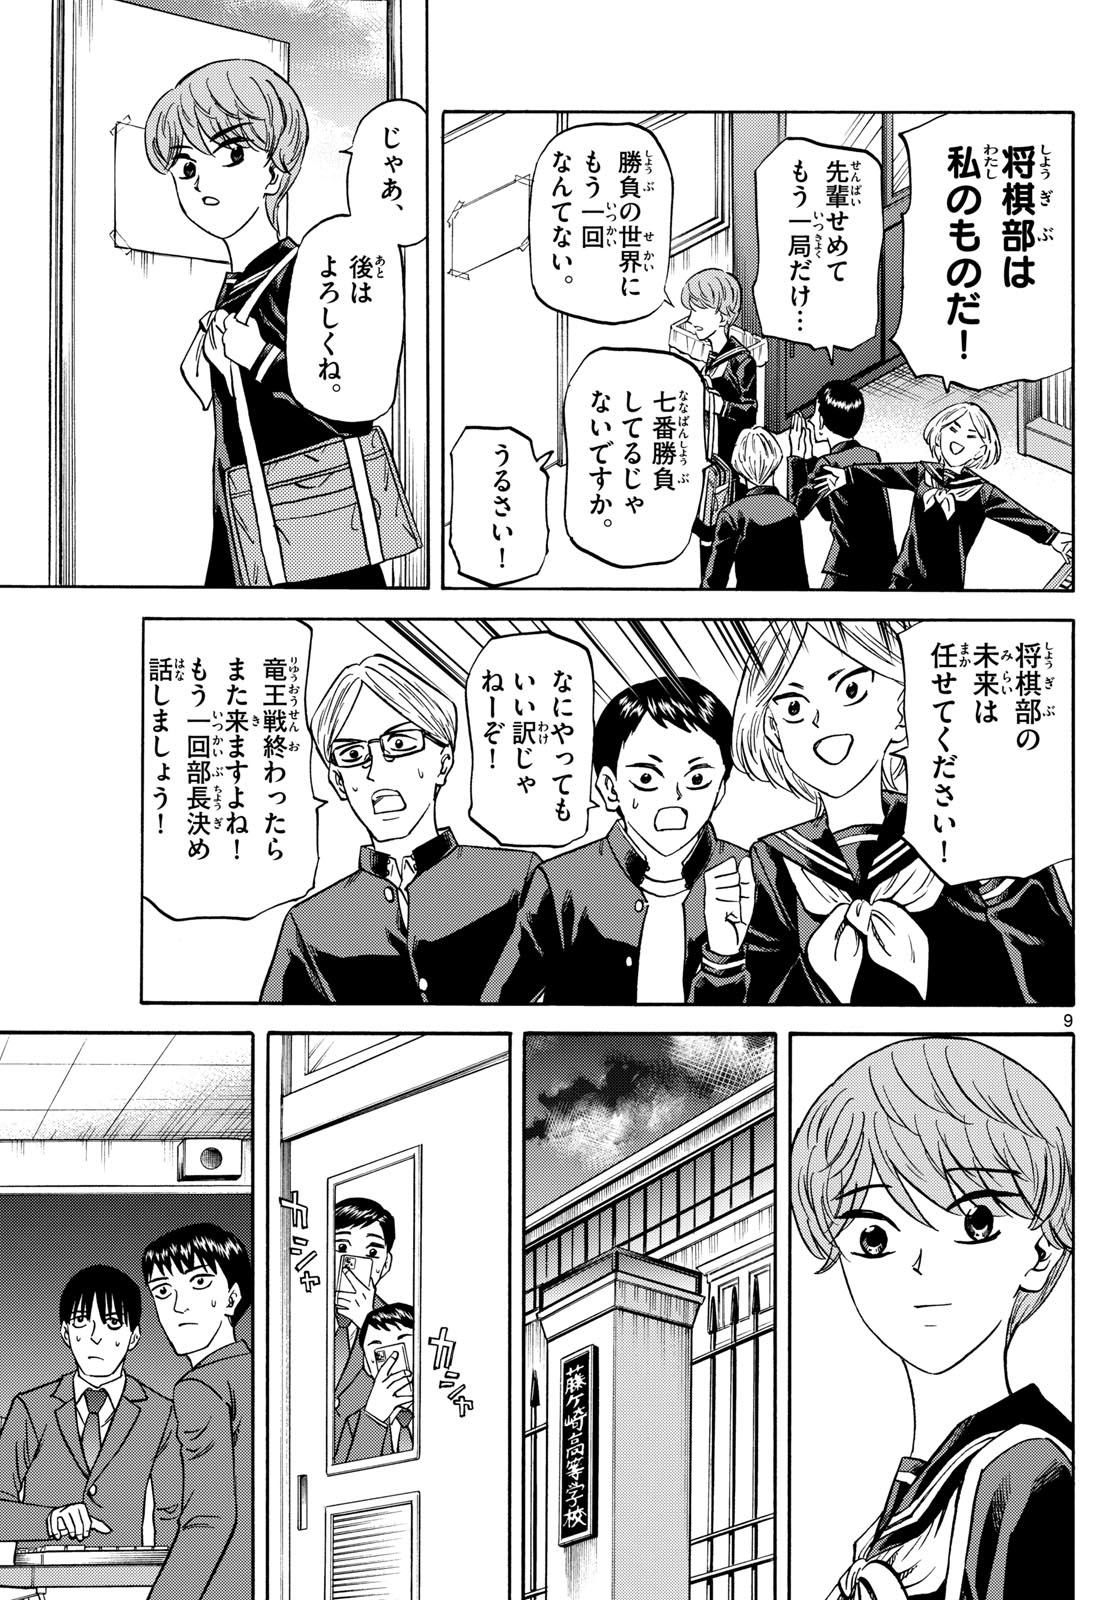 Tatsu to Ichigo - Chapter 171 - Page 9